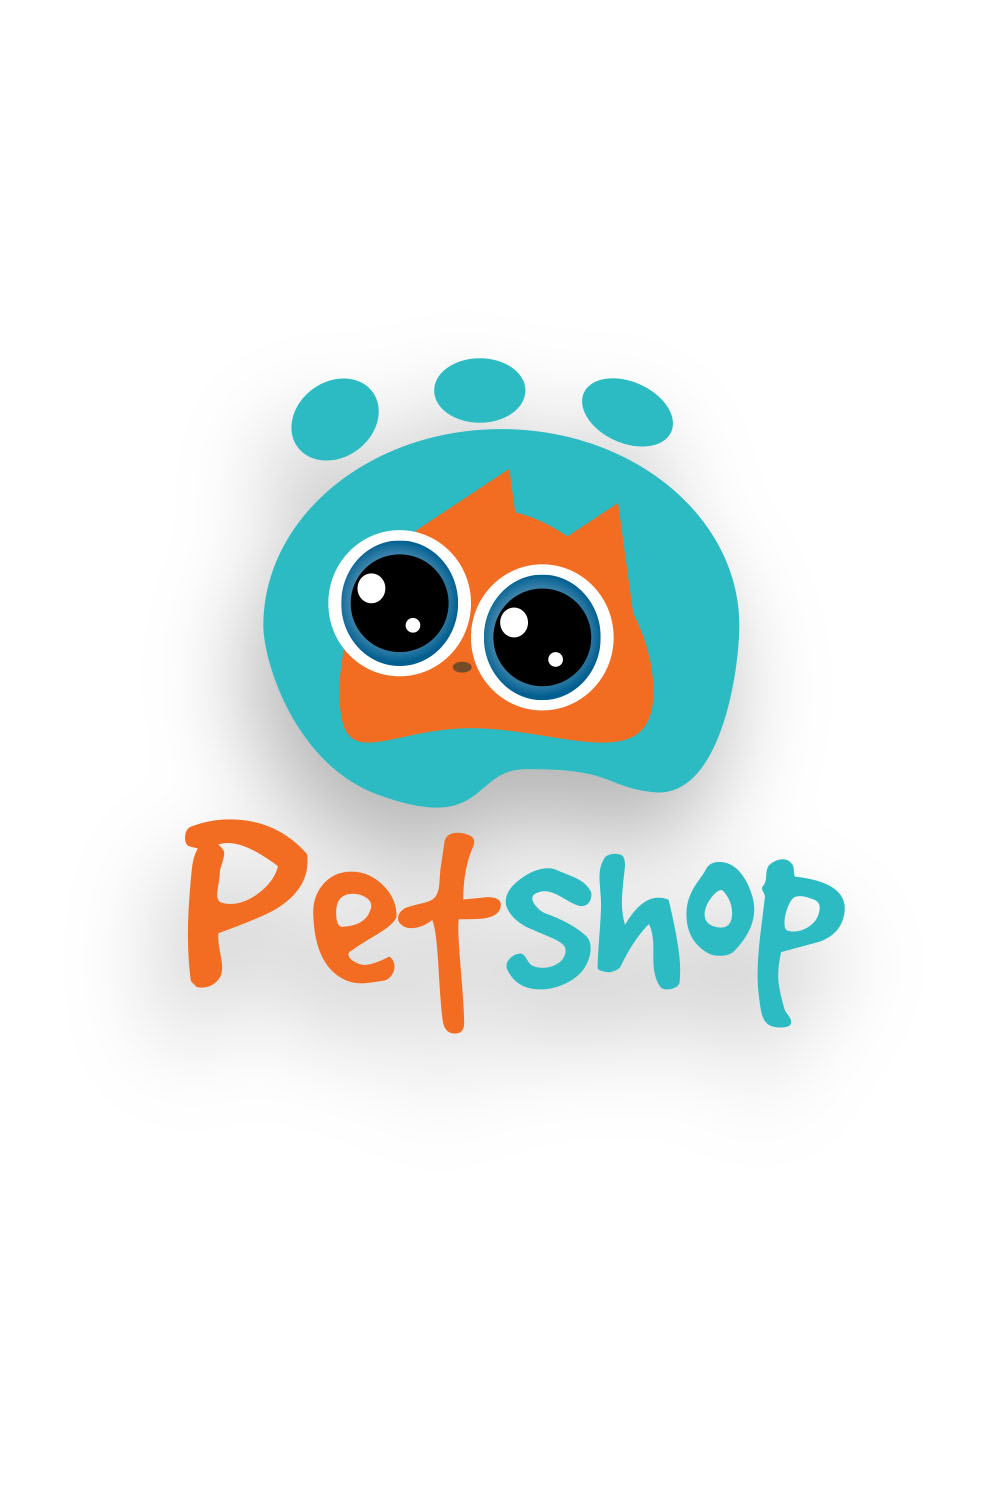 Petshop logo design pinterest preview image.